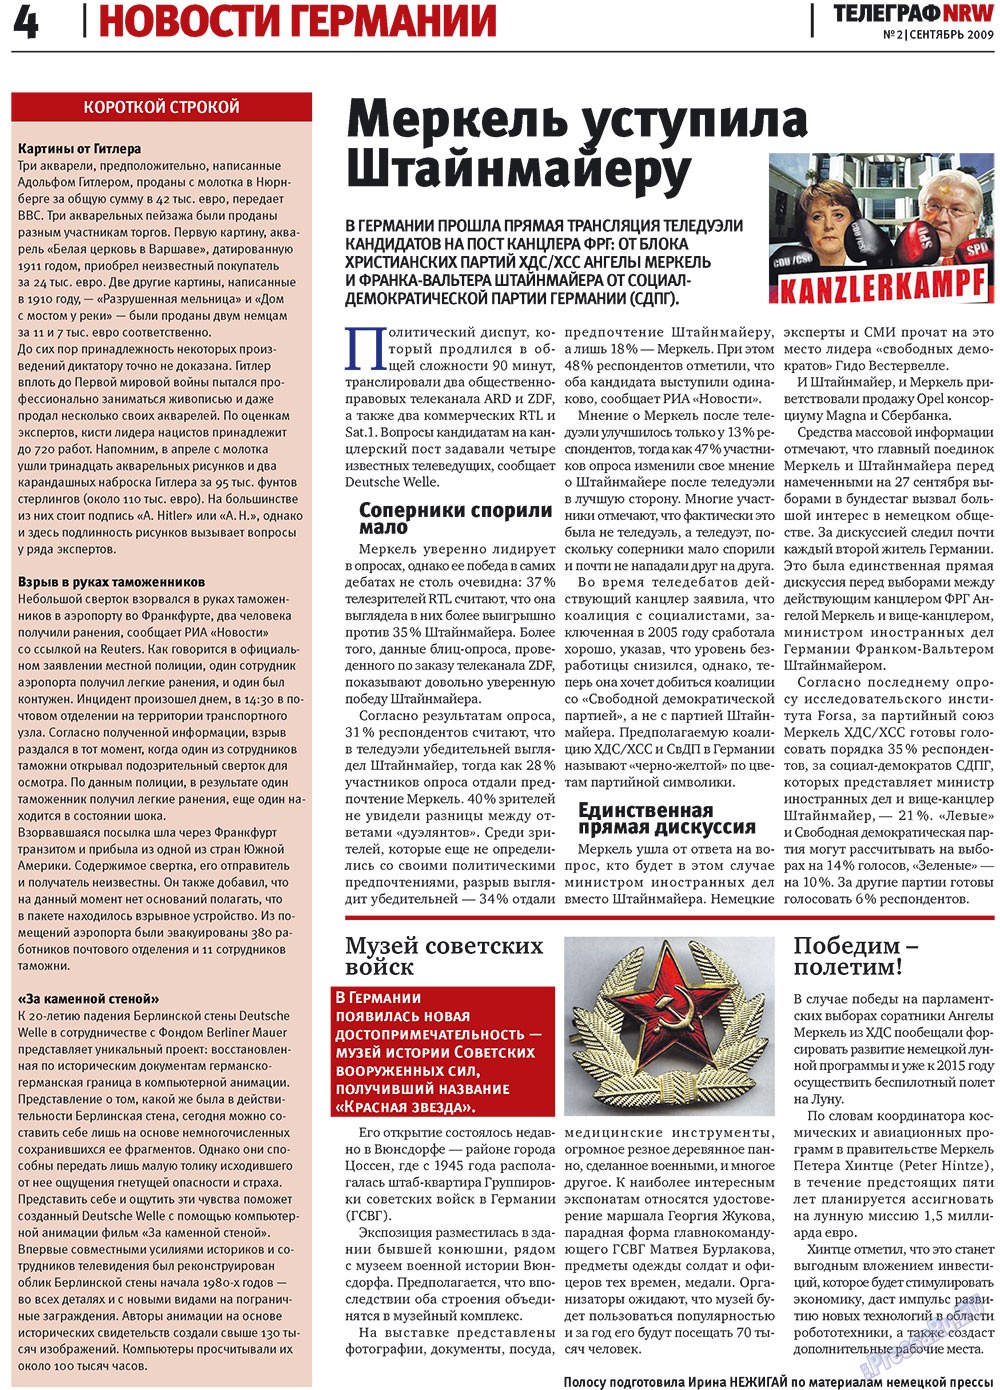 Телеграф NRW (газета). 2009 год, номер 2, стр. 4